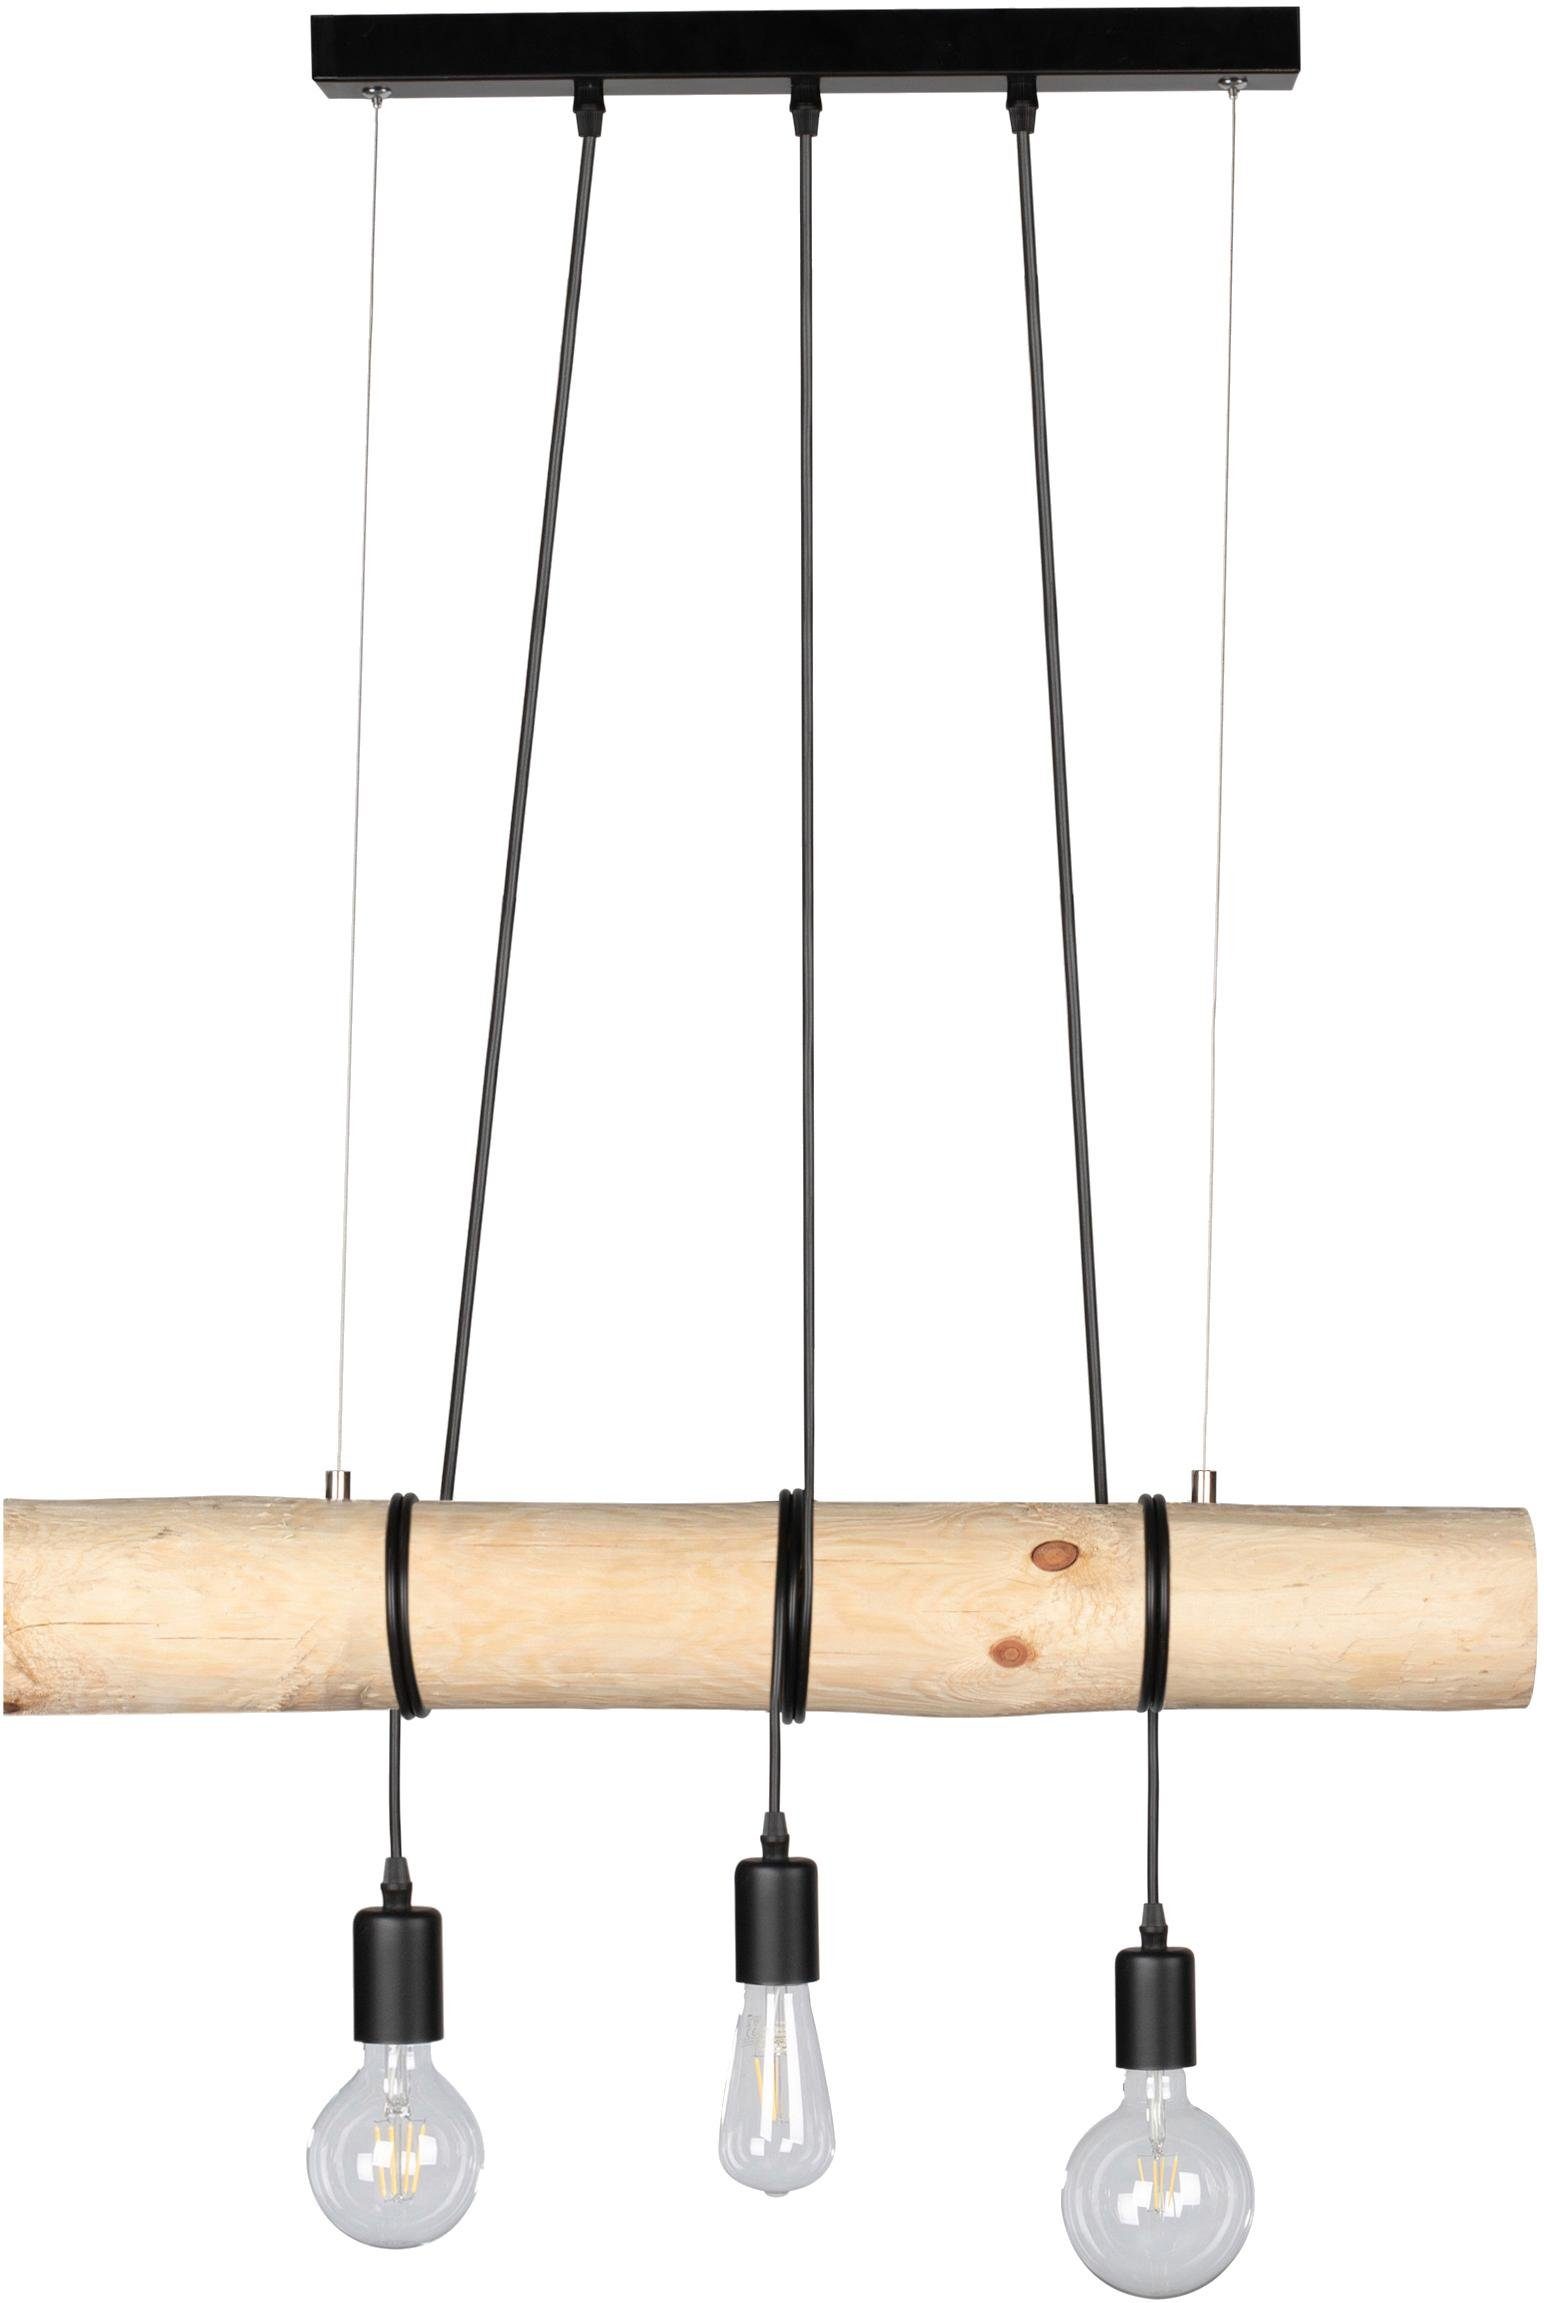 spot light hanglamp trabo hanglamp, met massief houten balken oe 8-12 cm, natuurproduct, in te korten bruin